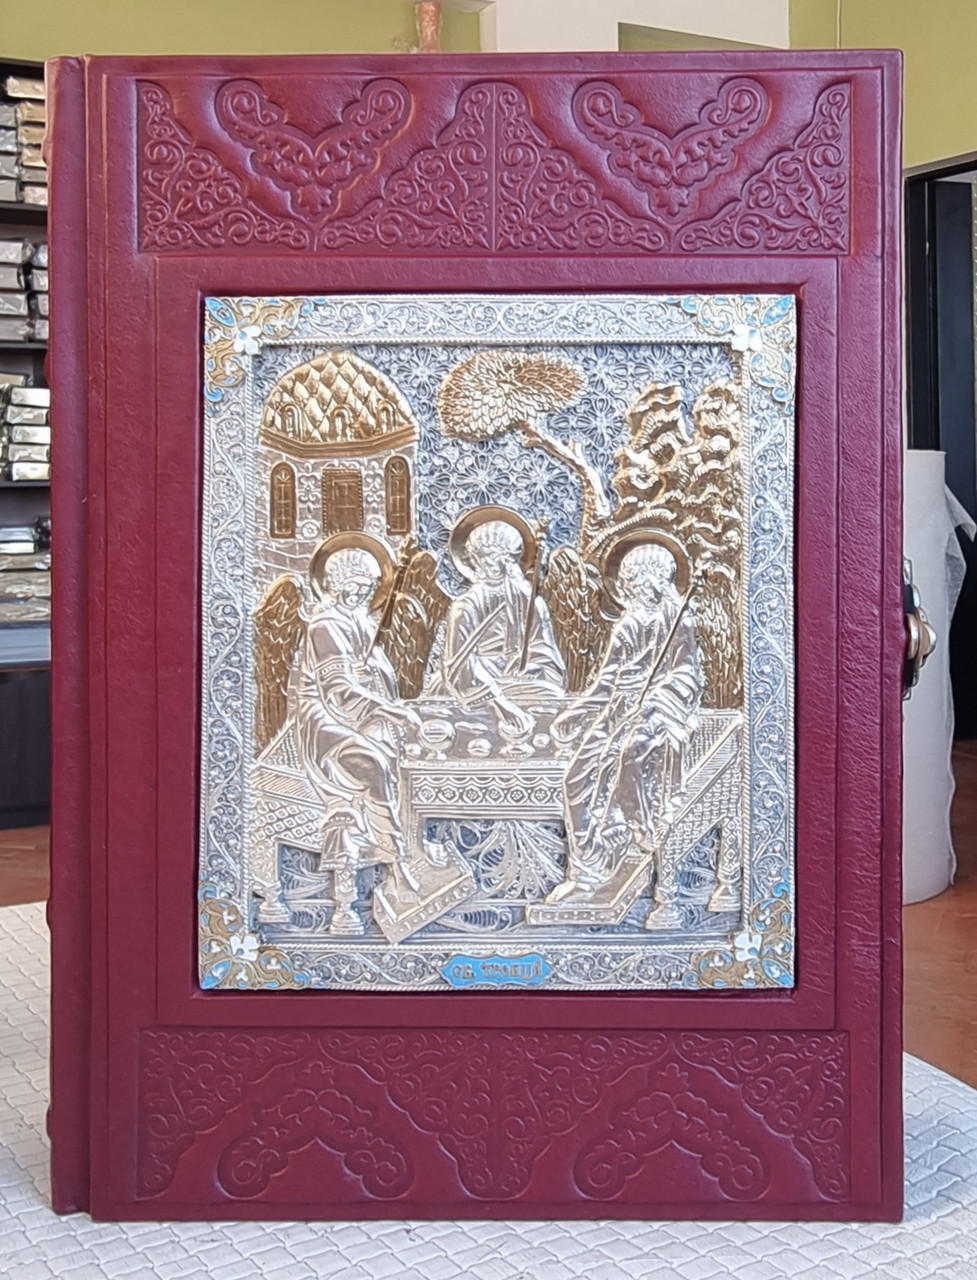 Біблія подарункова  книга  в шкіряному окладі  на російській мові,накладка Трійця сріблення -позолота , розмір  20*30